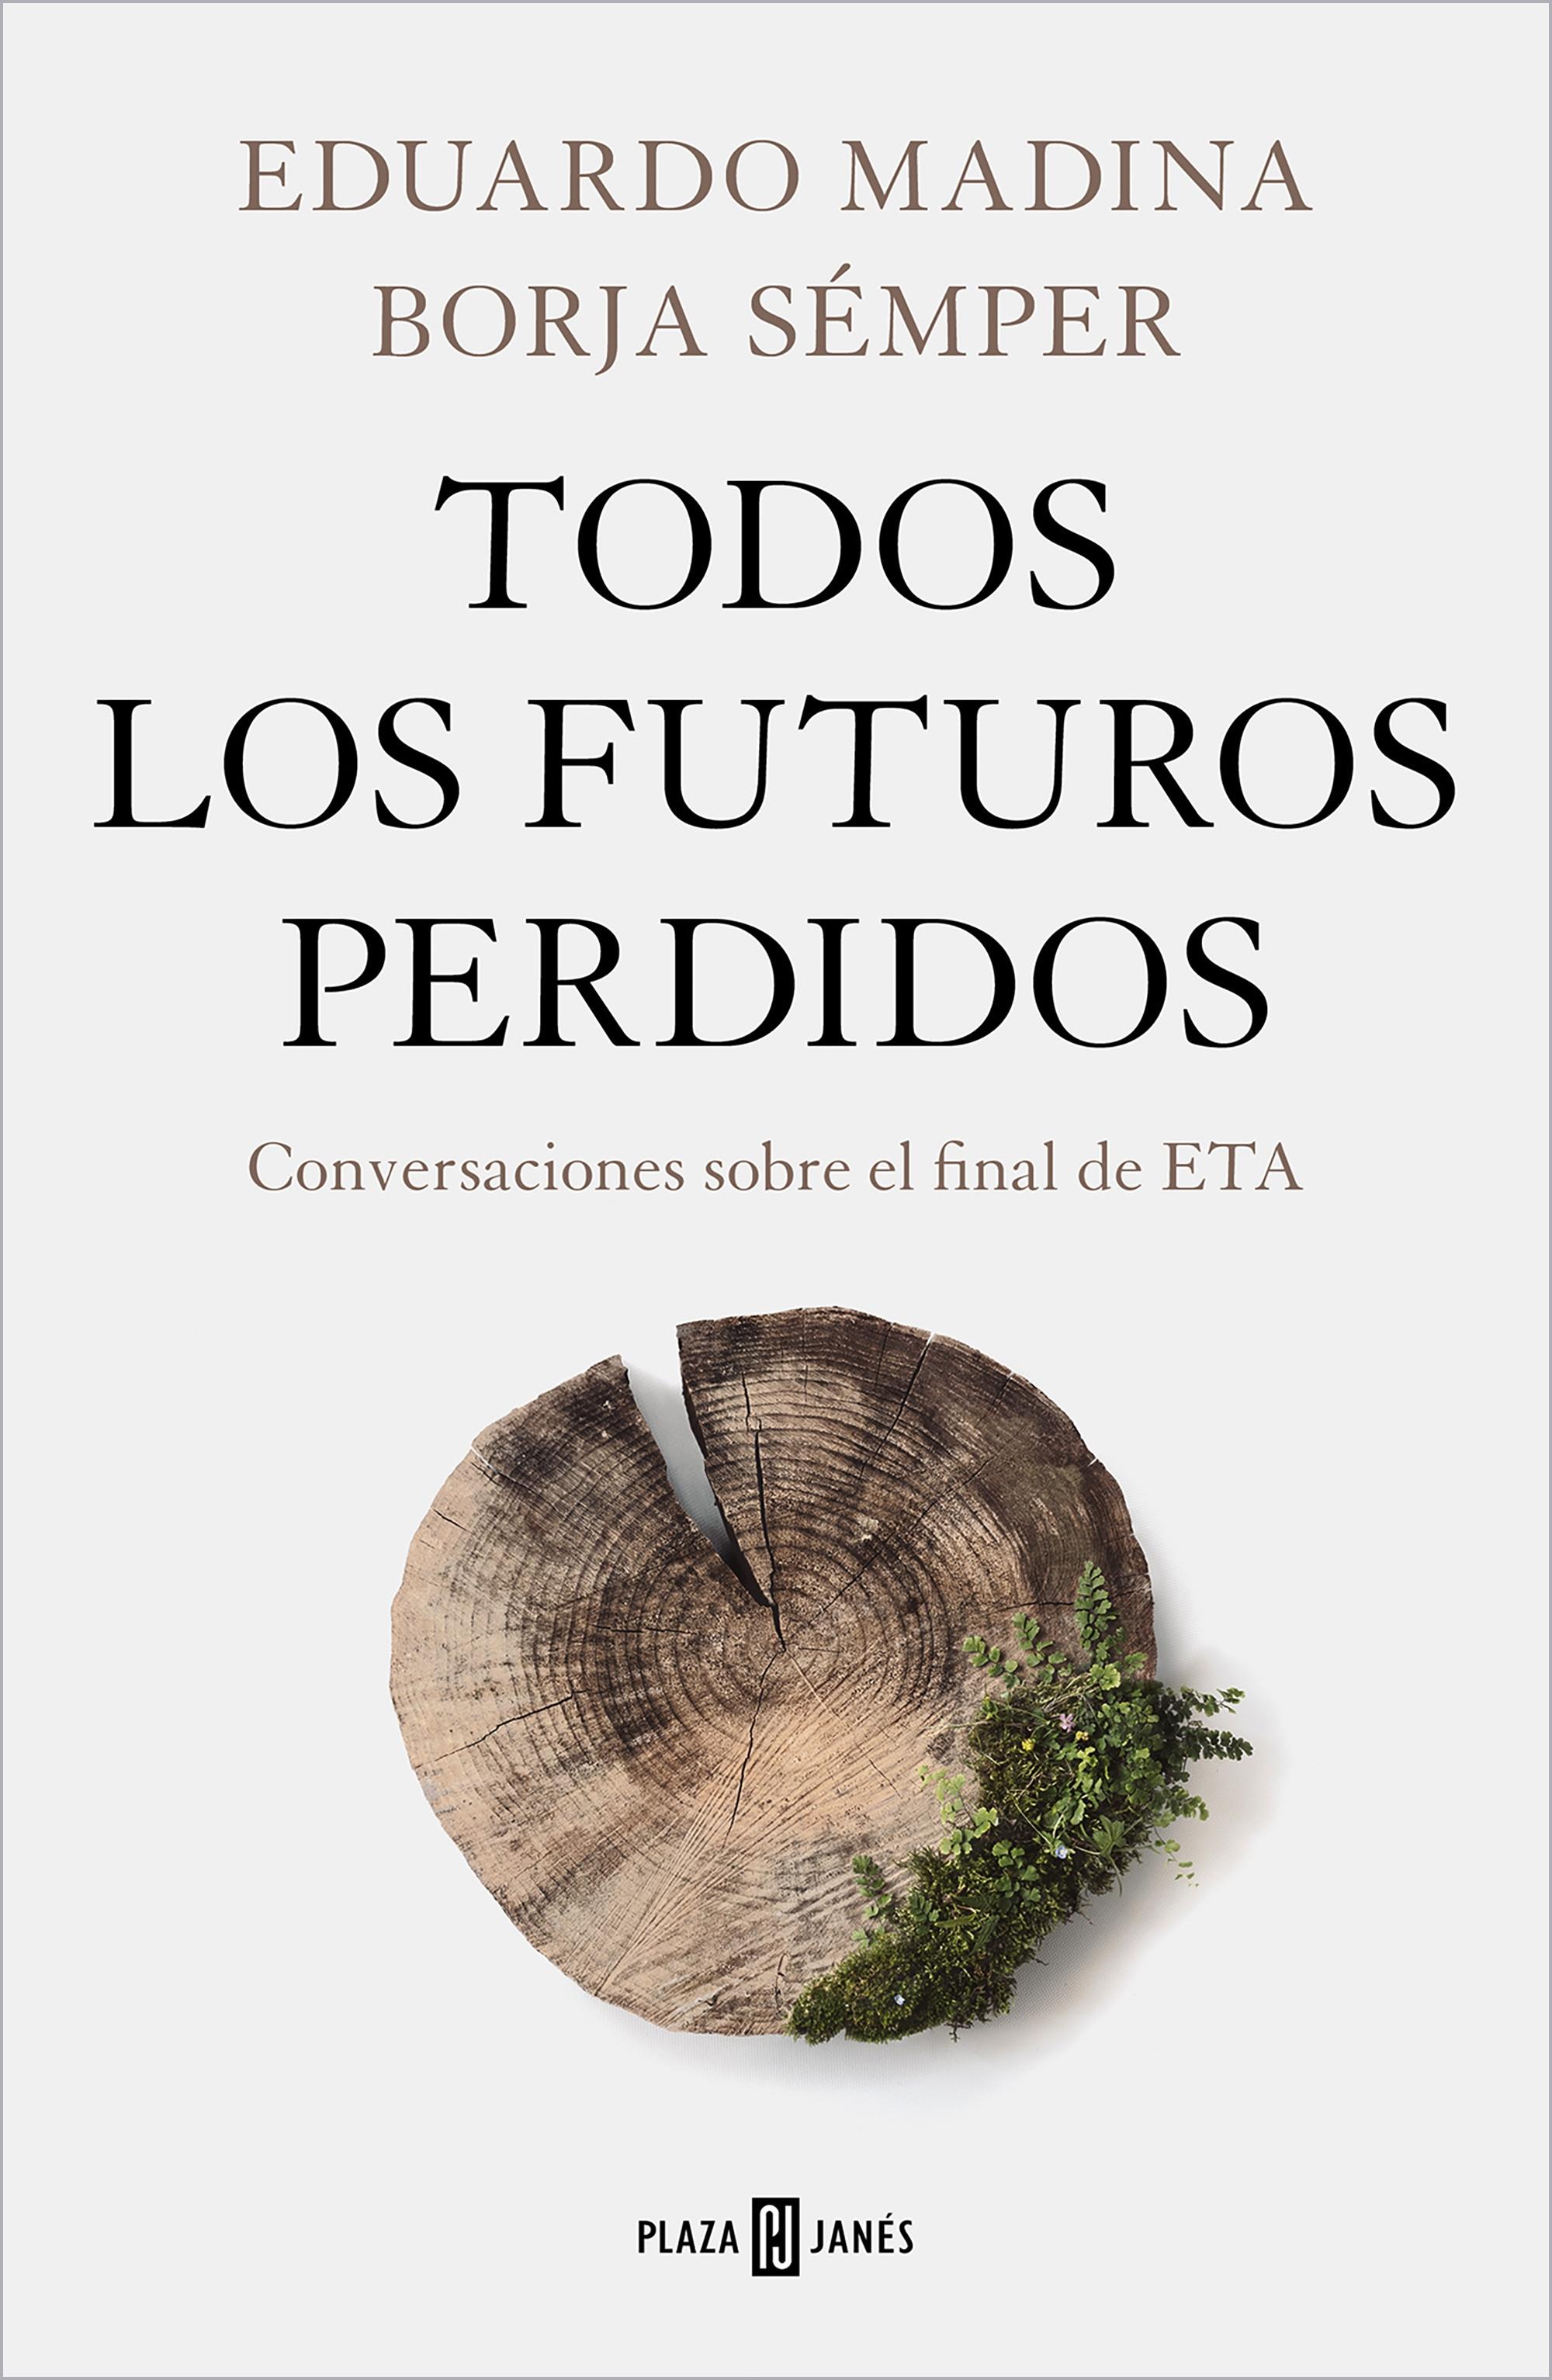 Todos los futuros perdidos "Conversaciones sobre el final de ETA"